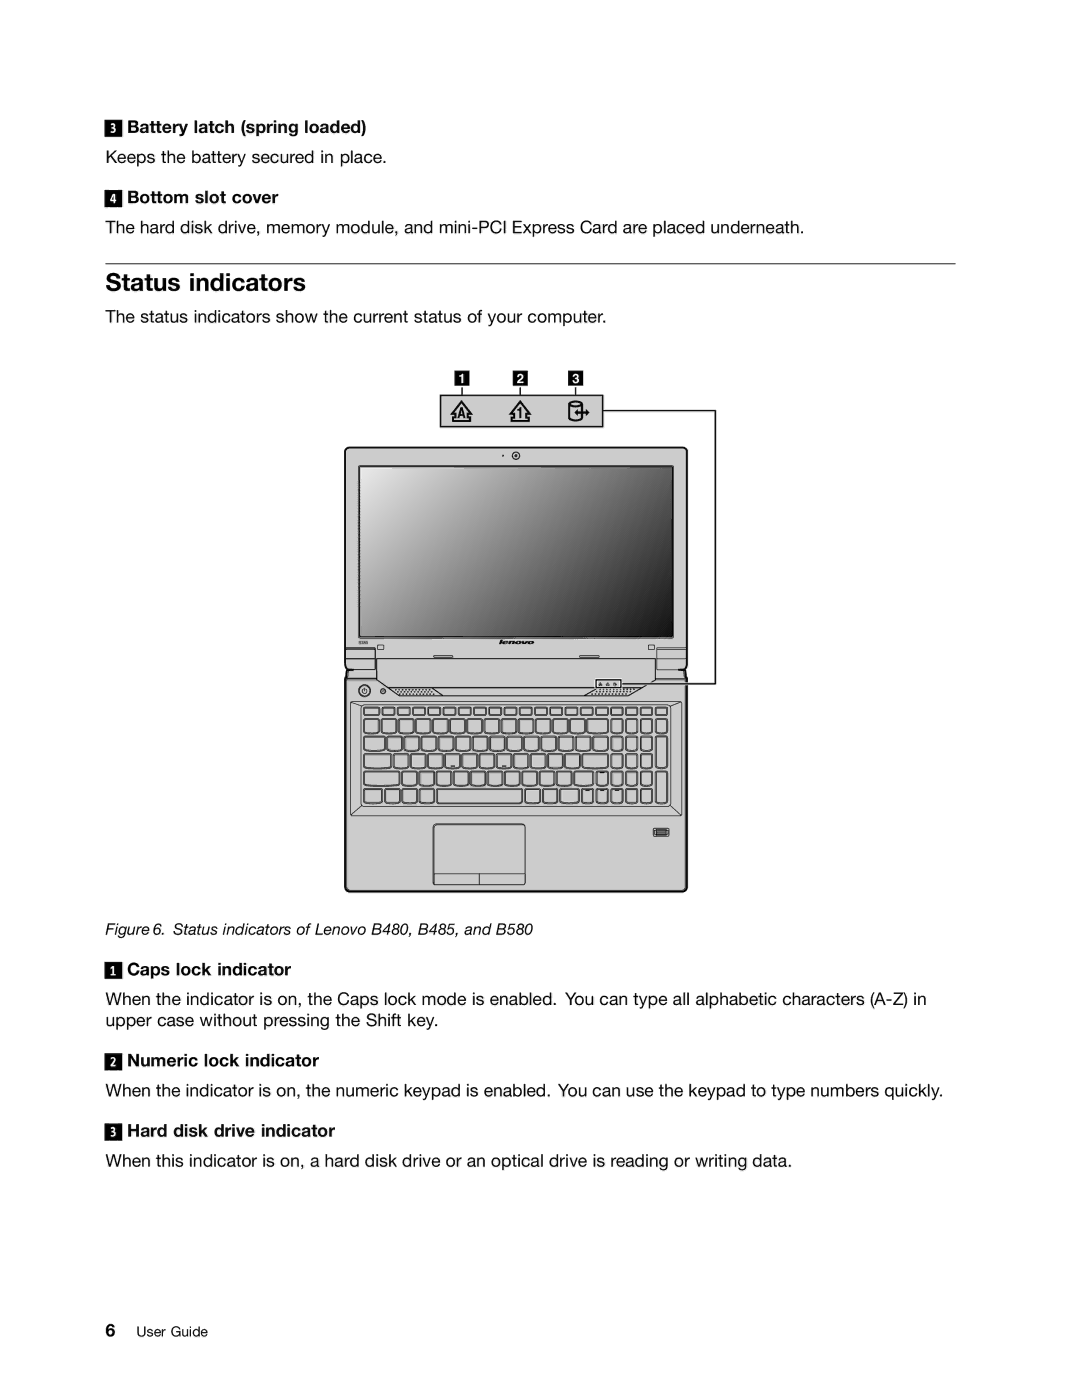 Lenovo B485 manual Status indicators 